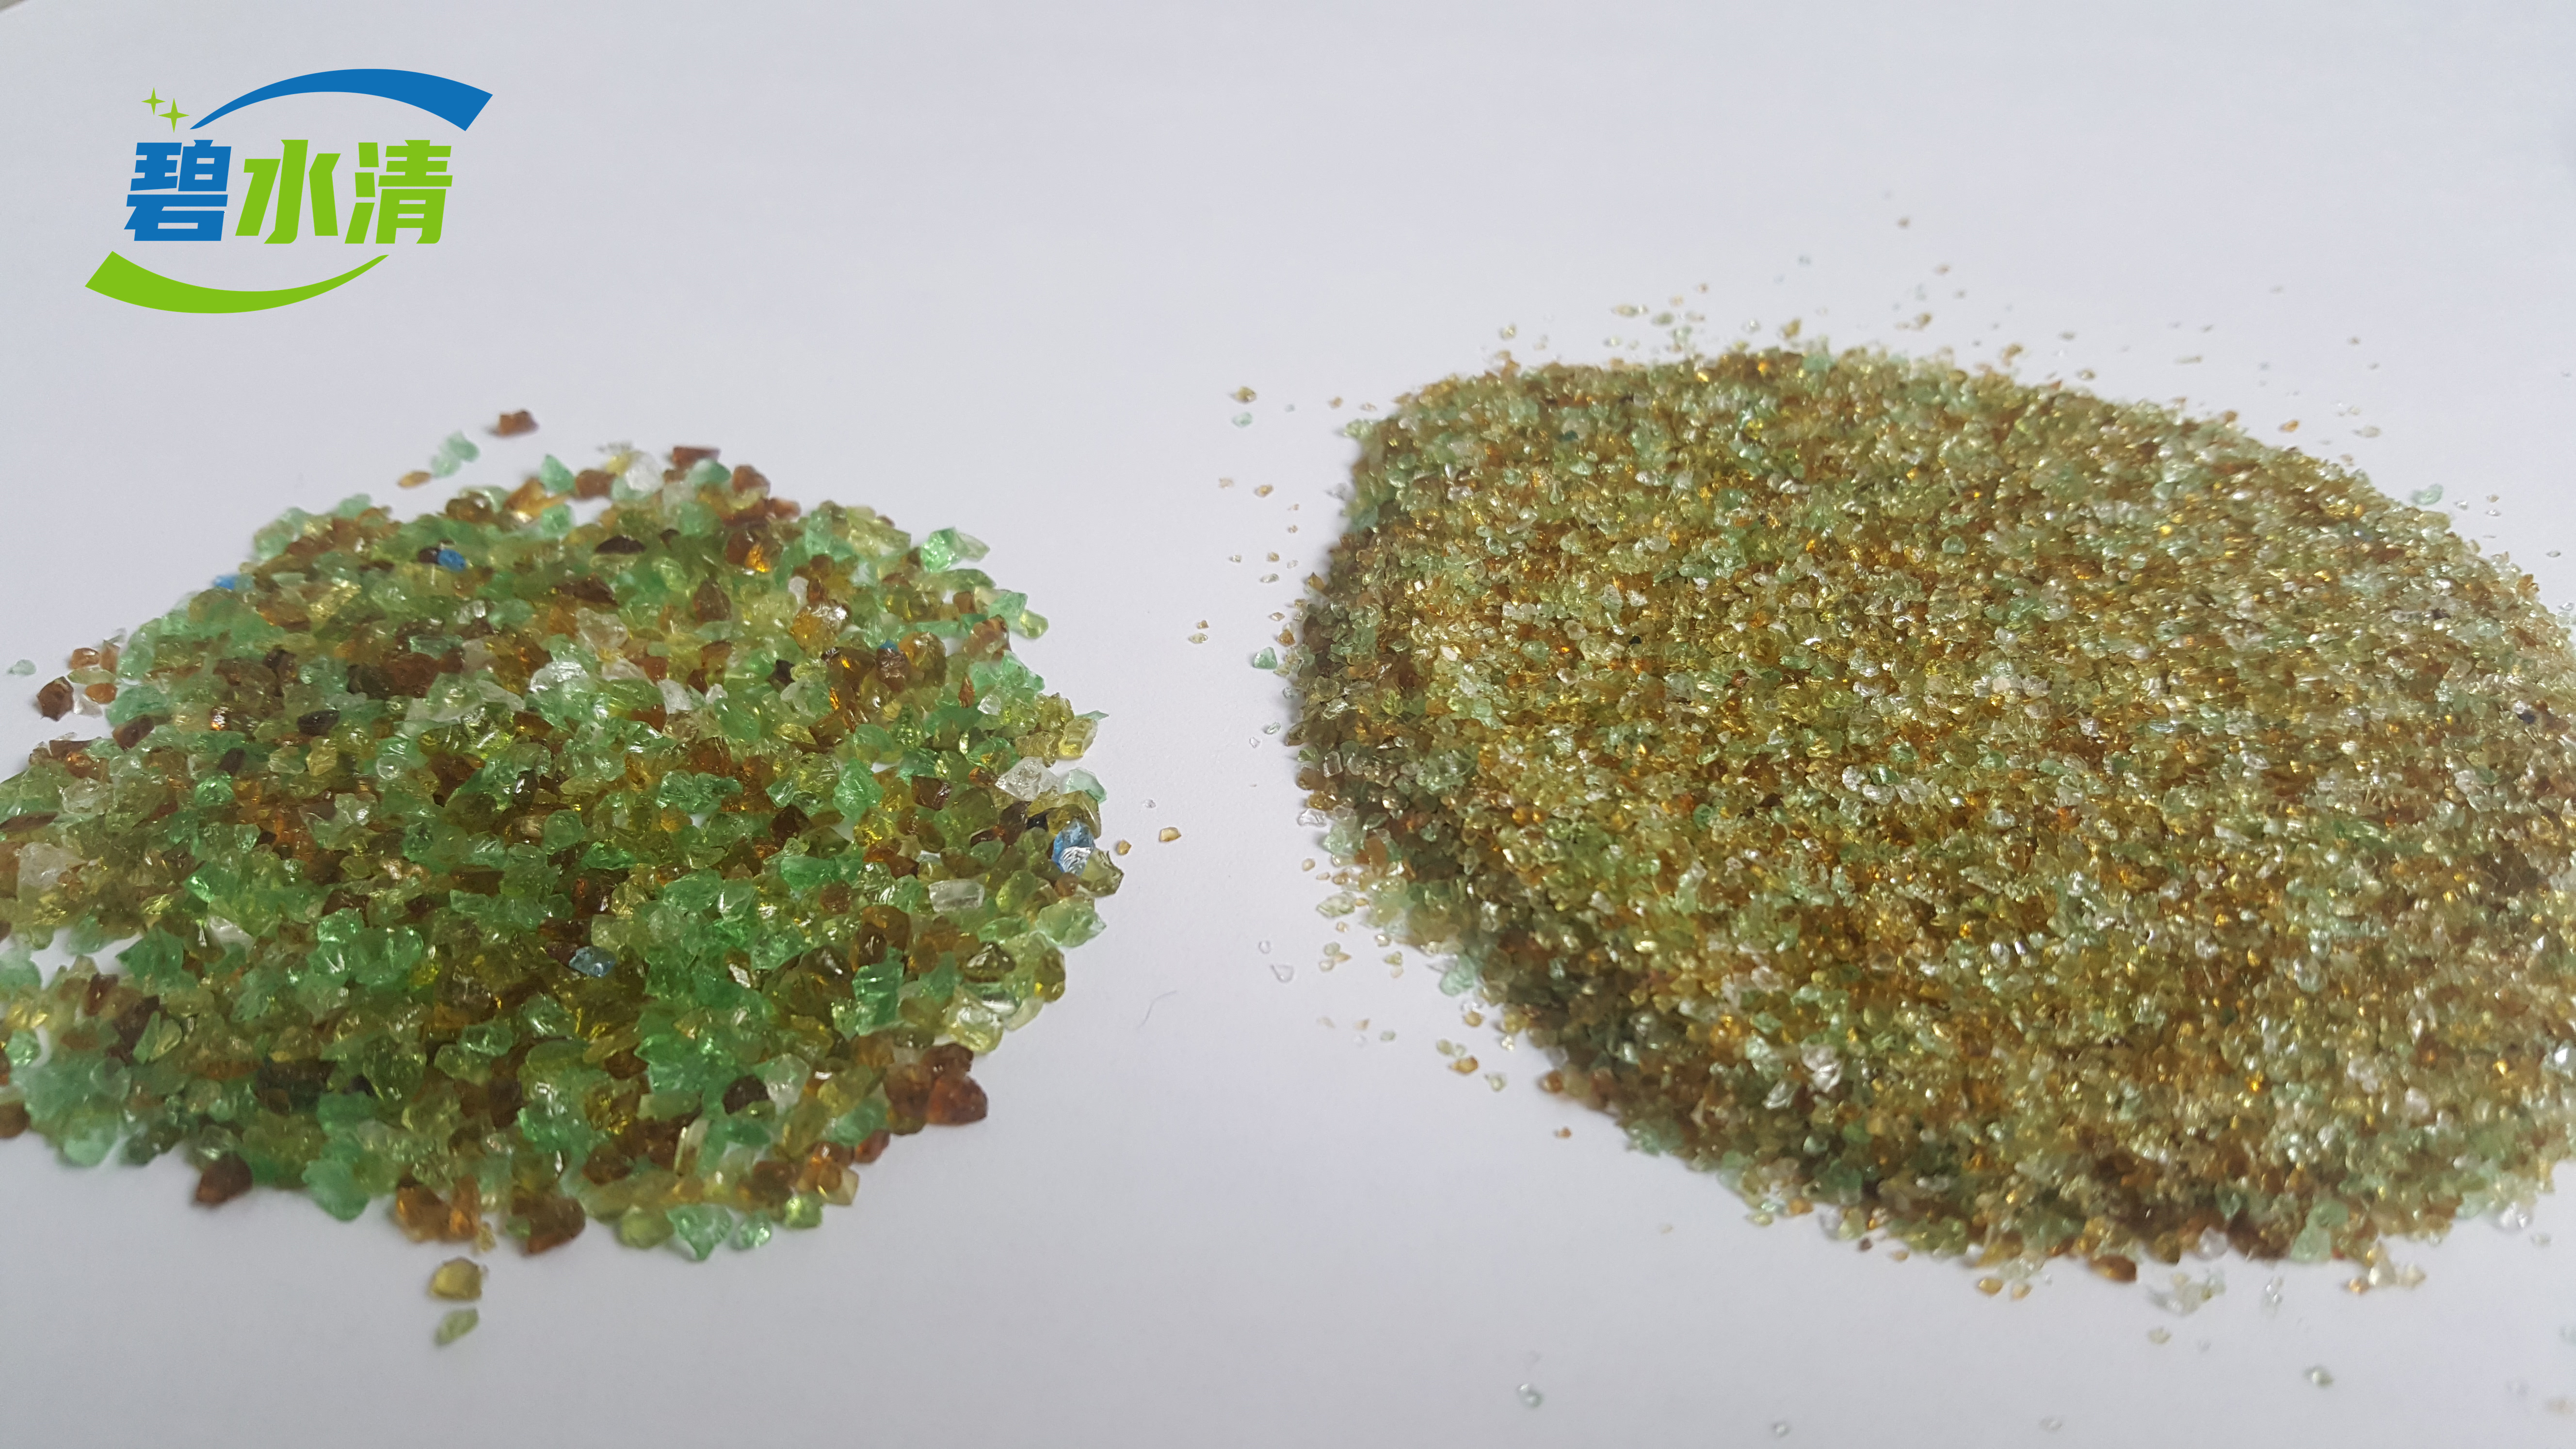 AFM玻璃滤料作为活化的过滤介质可永久替代石英砂